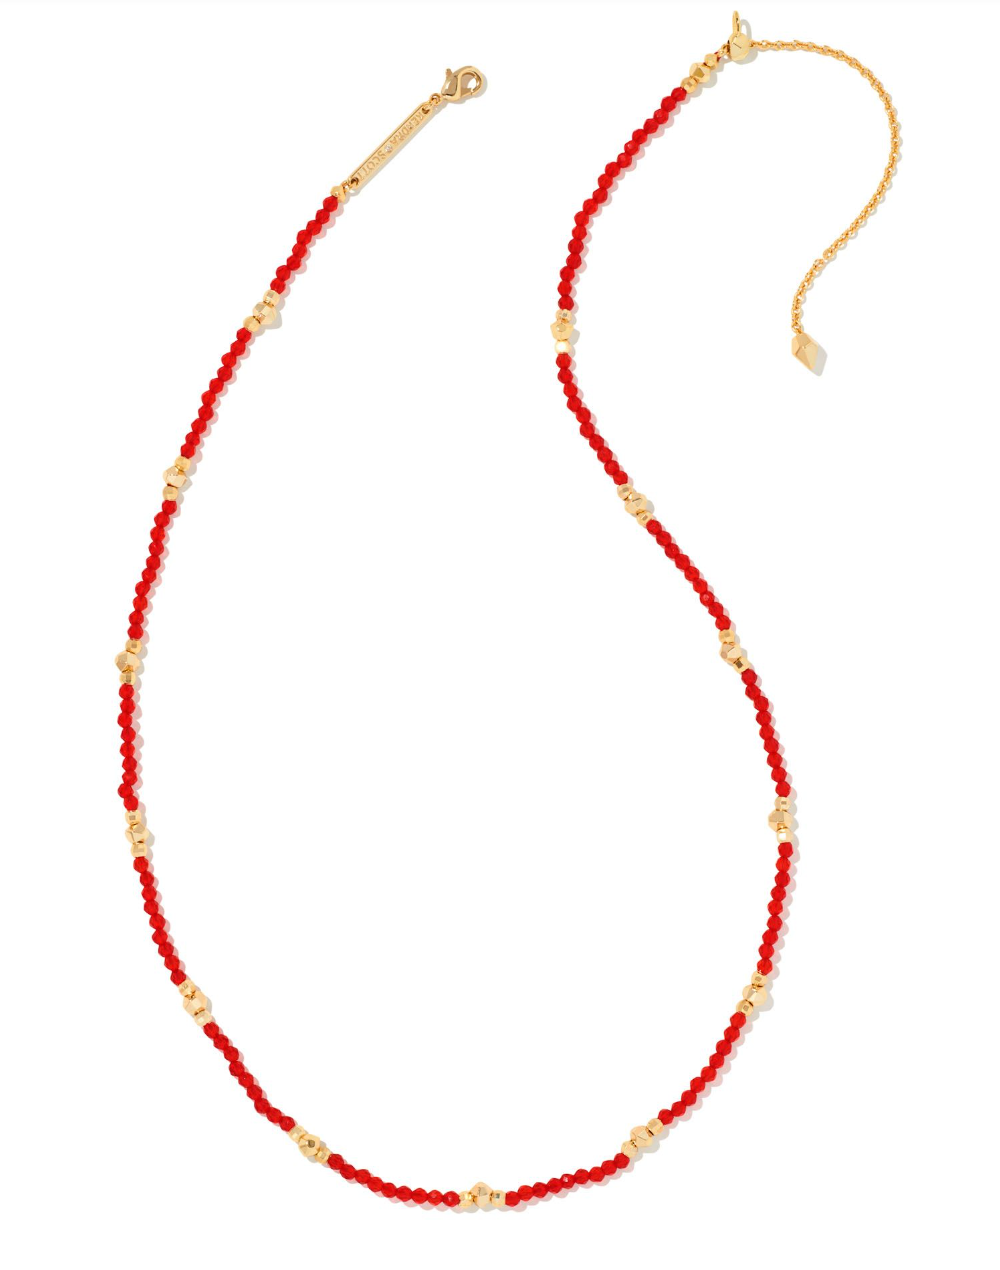 Britt Gold Choker Necklace in Red Glass - Kendra Scott